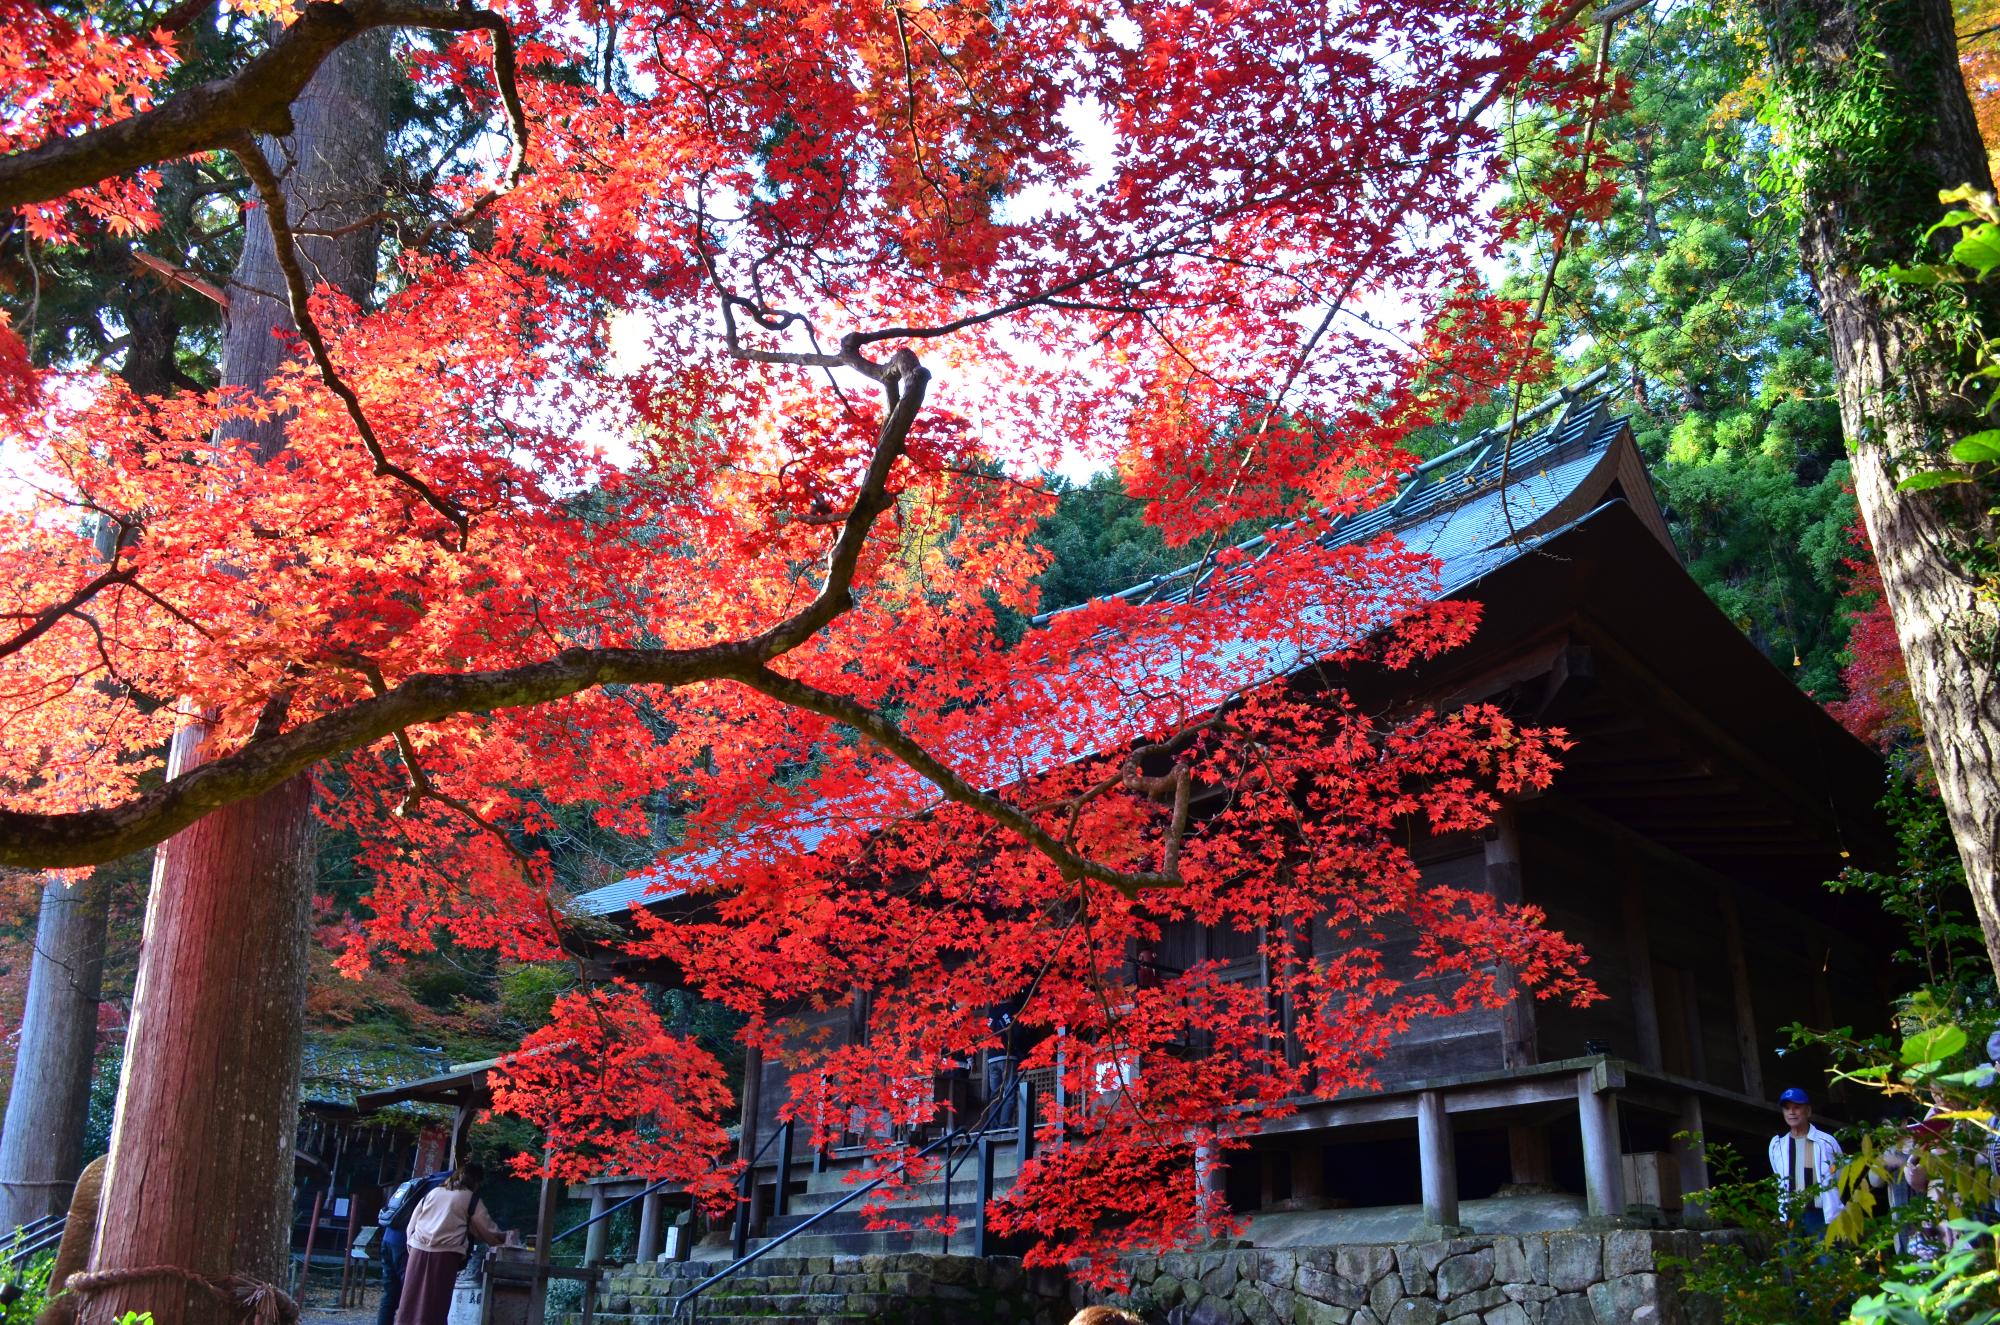 お寺の境内には真っ赤な紅葉。参拝客の姿もある。